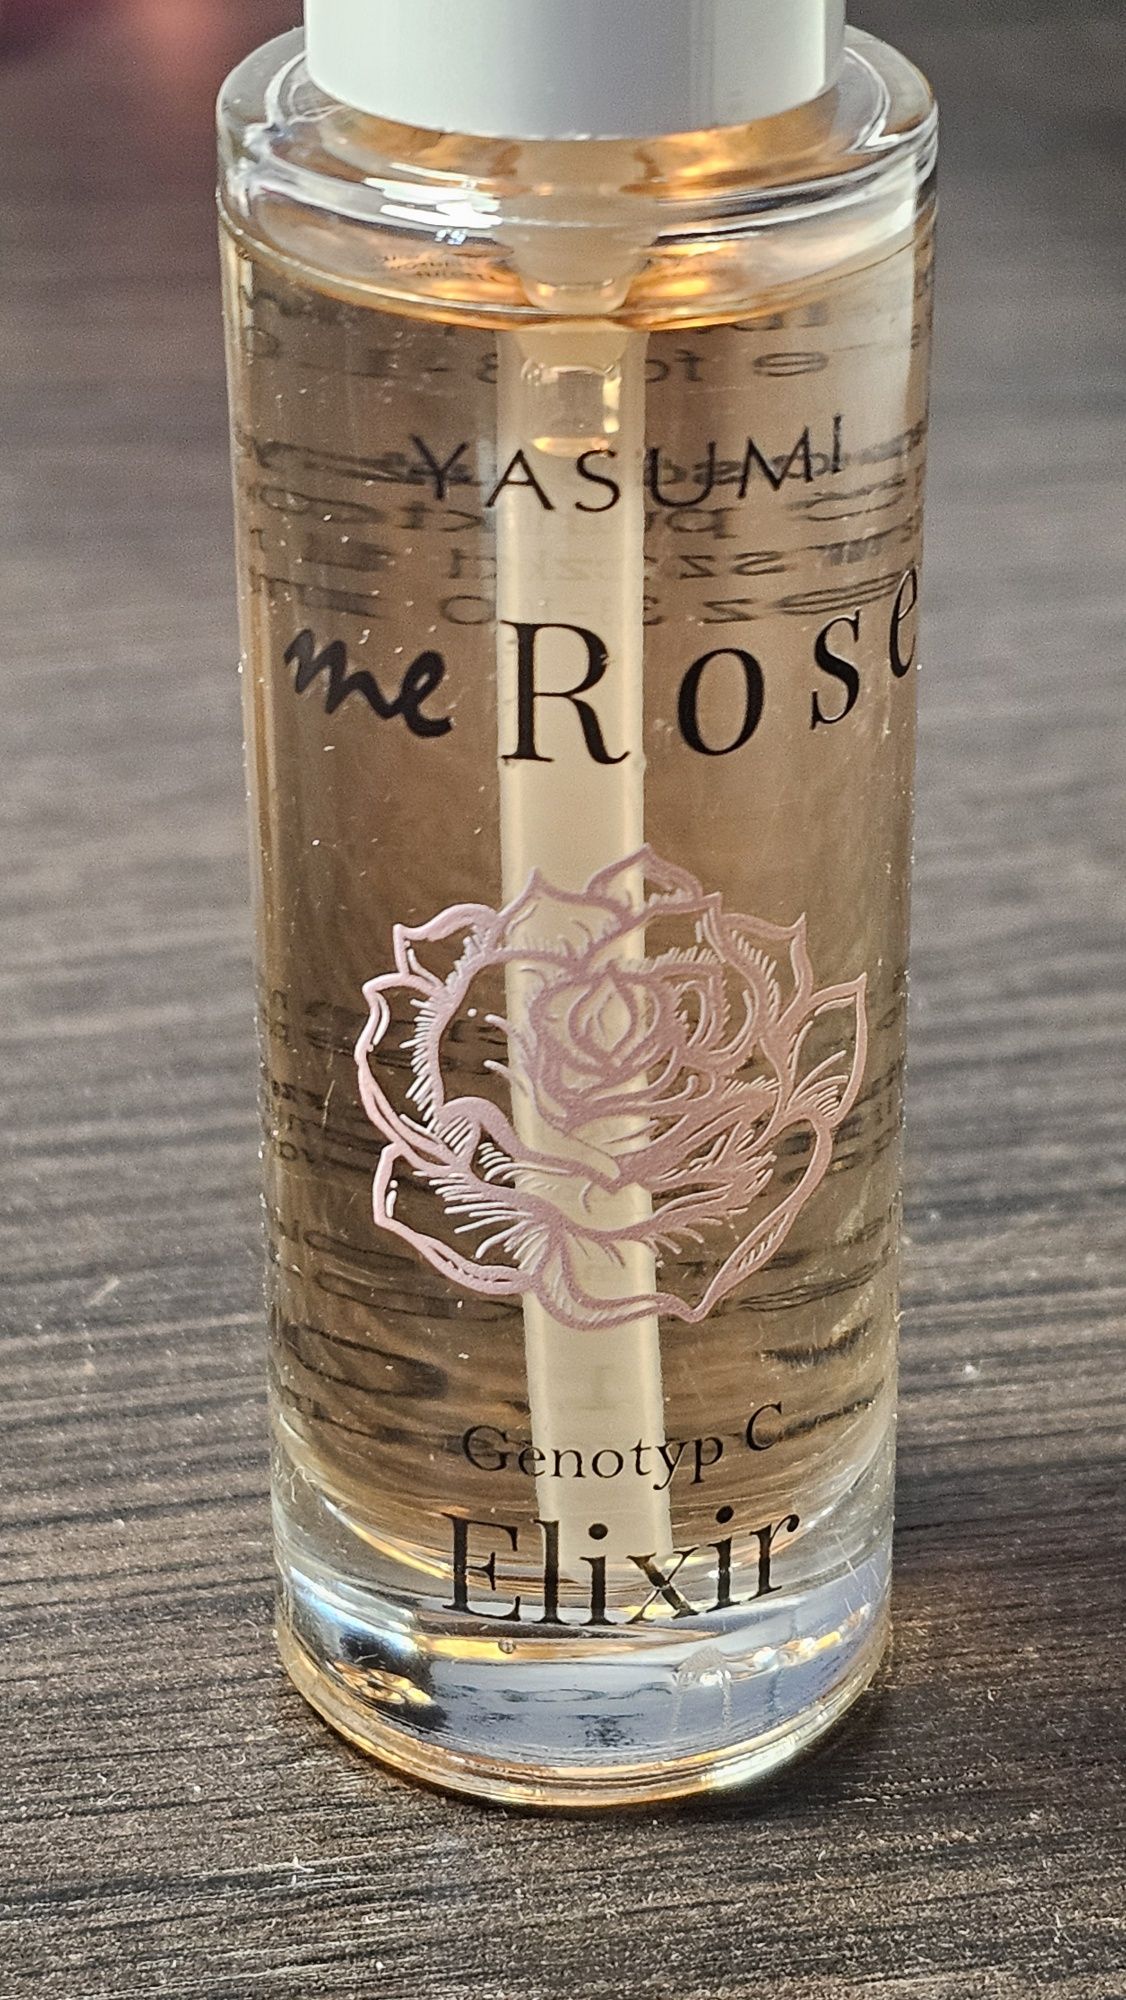 Yasumi - me Rose, Genotyp C Elixir. Serum olejek nawliżający do twarzy